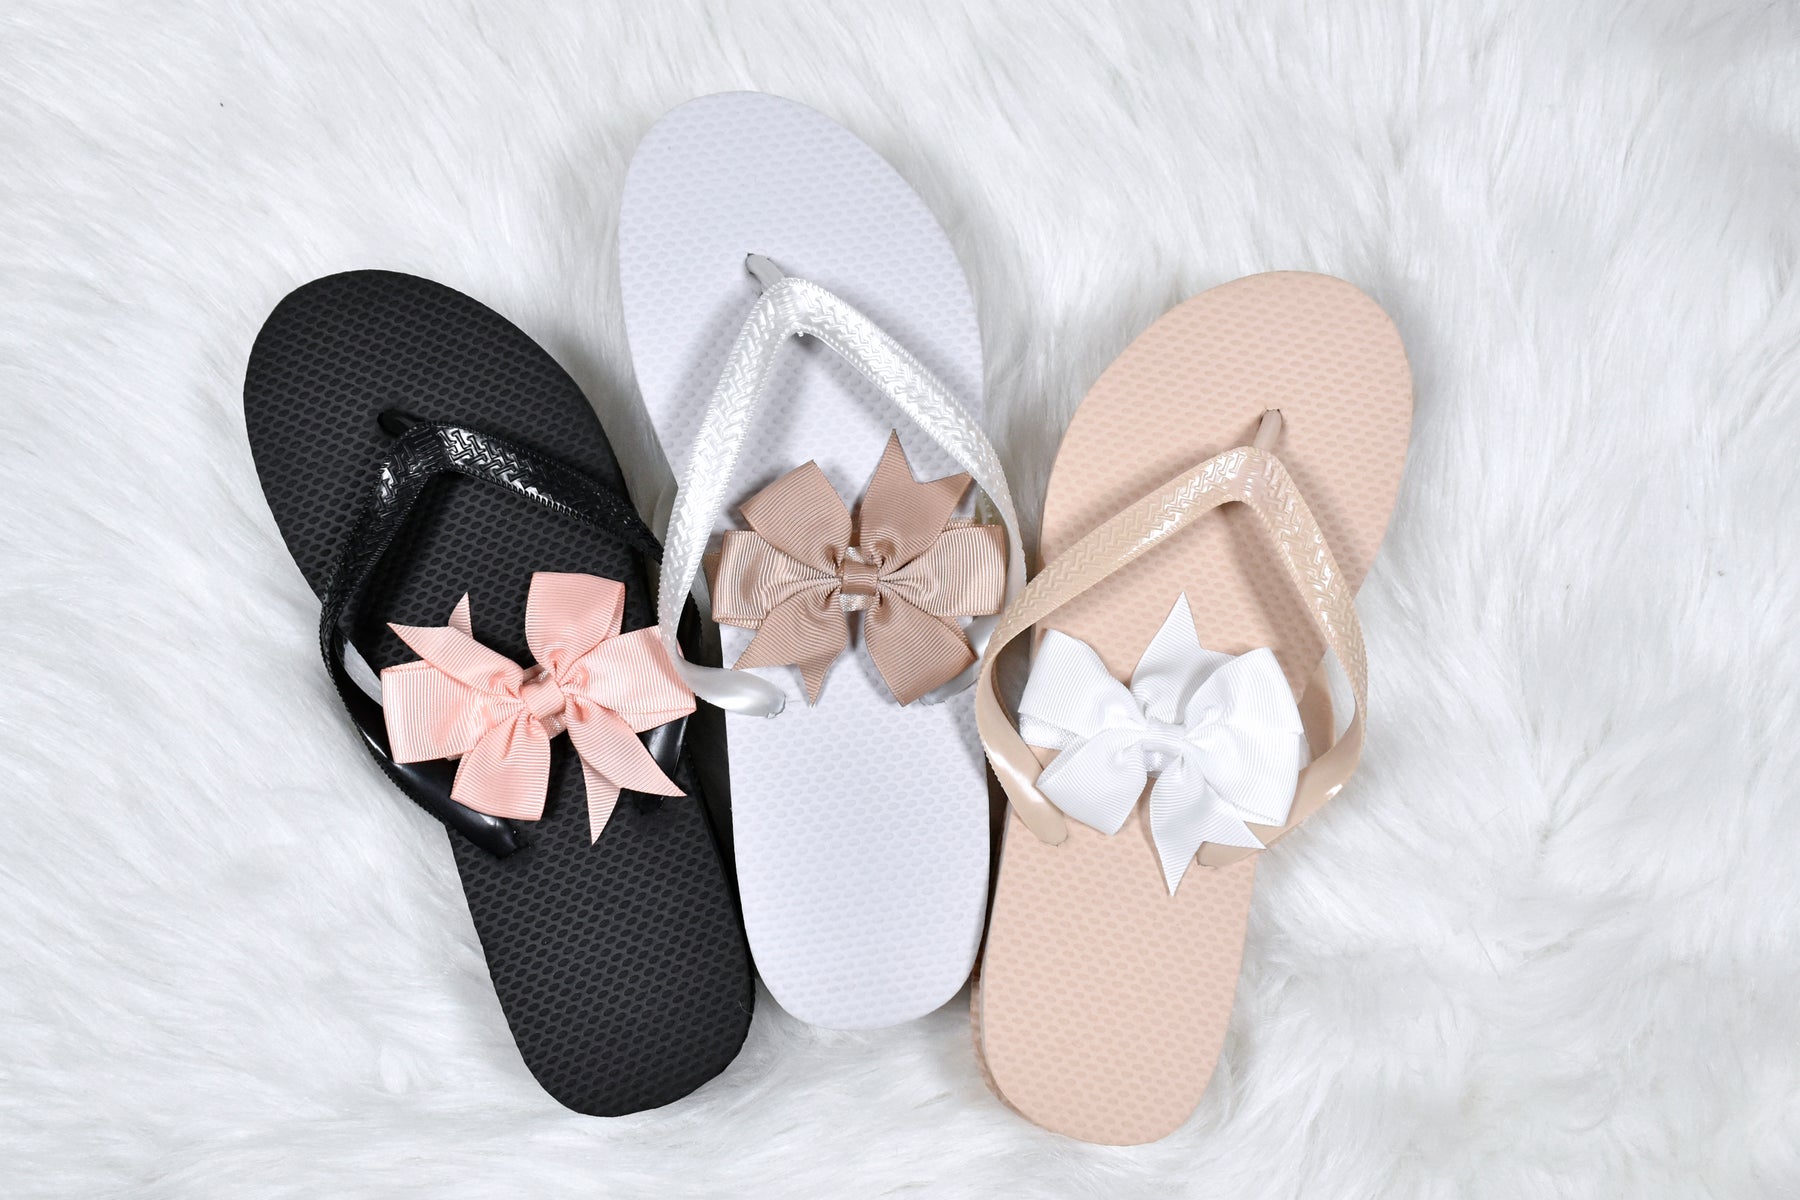 Bulk Flip Flops for Wedding Guests | 52 Pack Wholesale Wedding Sandals